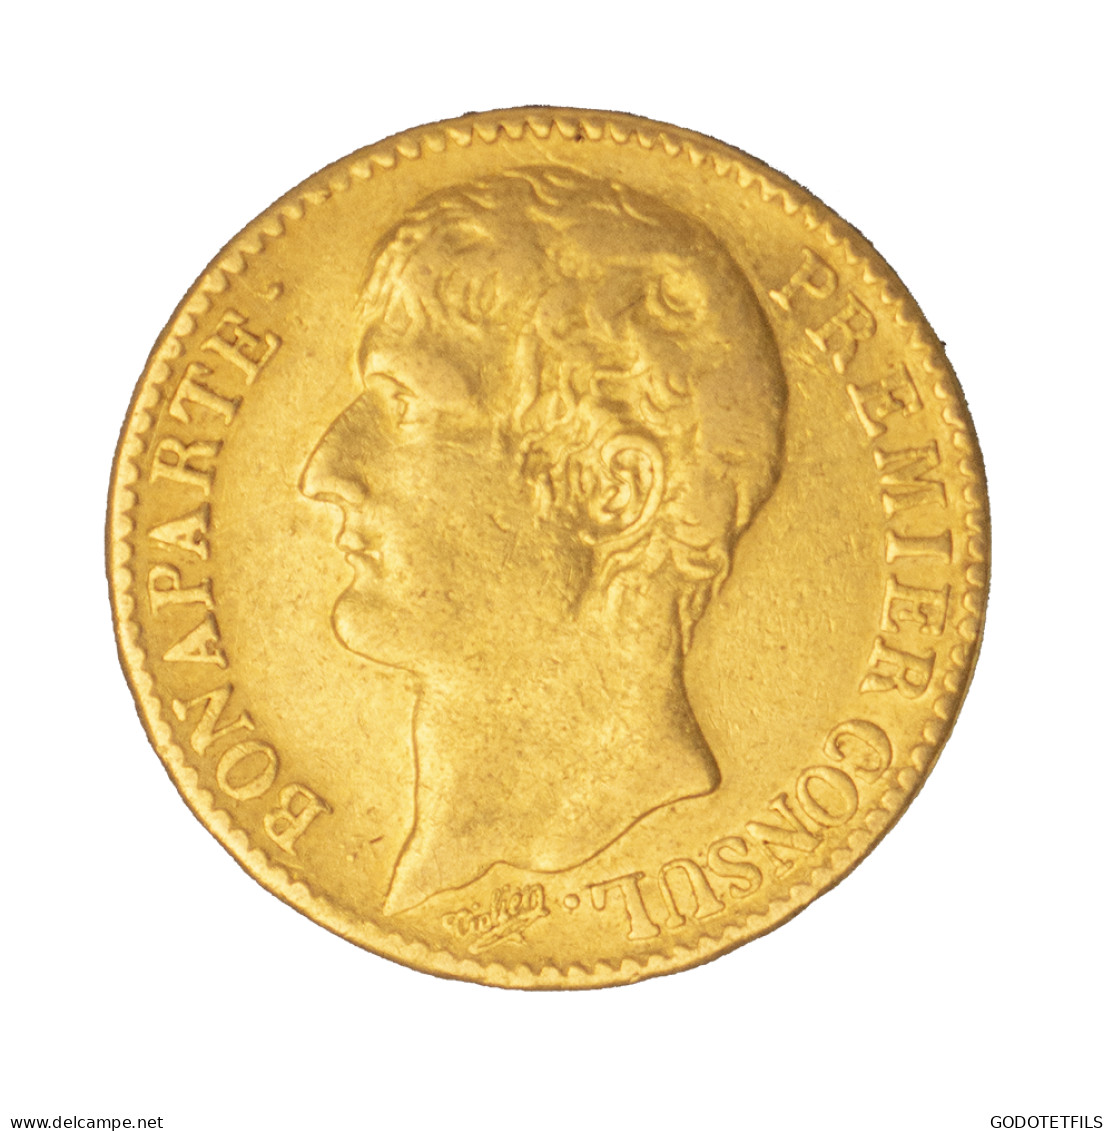 Bonaparte Premier Consul-40 Francs An 12 (1804) Paris - 40 Francs (gold)